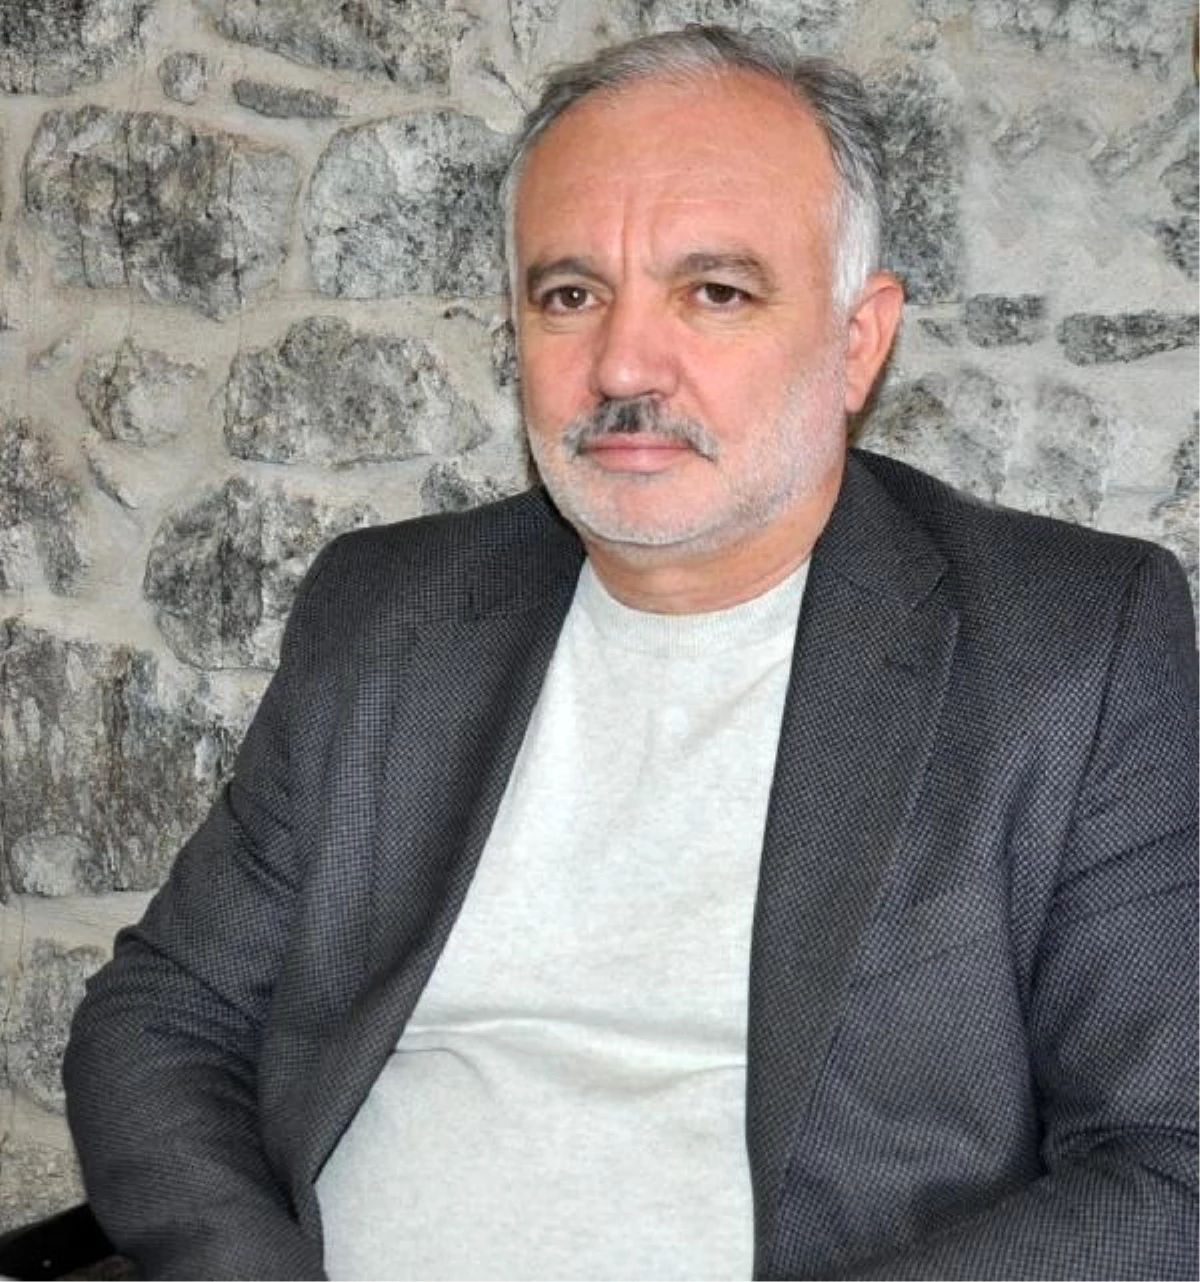 SES Partisi Genel Başkanı Ayhan Bilgen, CHP\'yi eleştirerek Orta Doğu\'daki durumu tartışmalarına dahil etmeleri gerektiğini söyledi